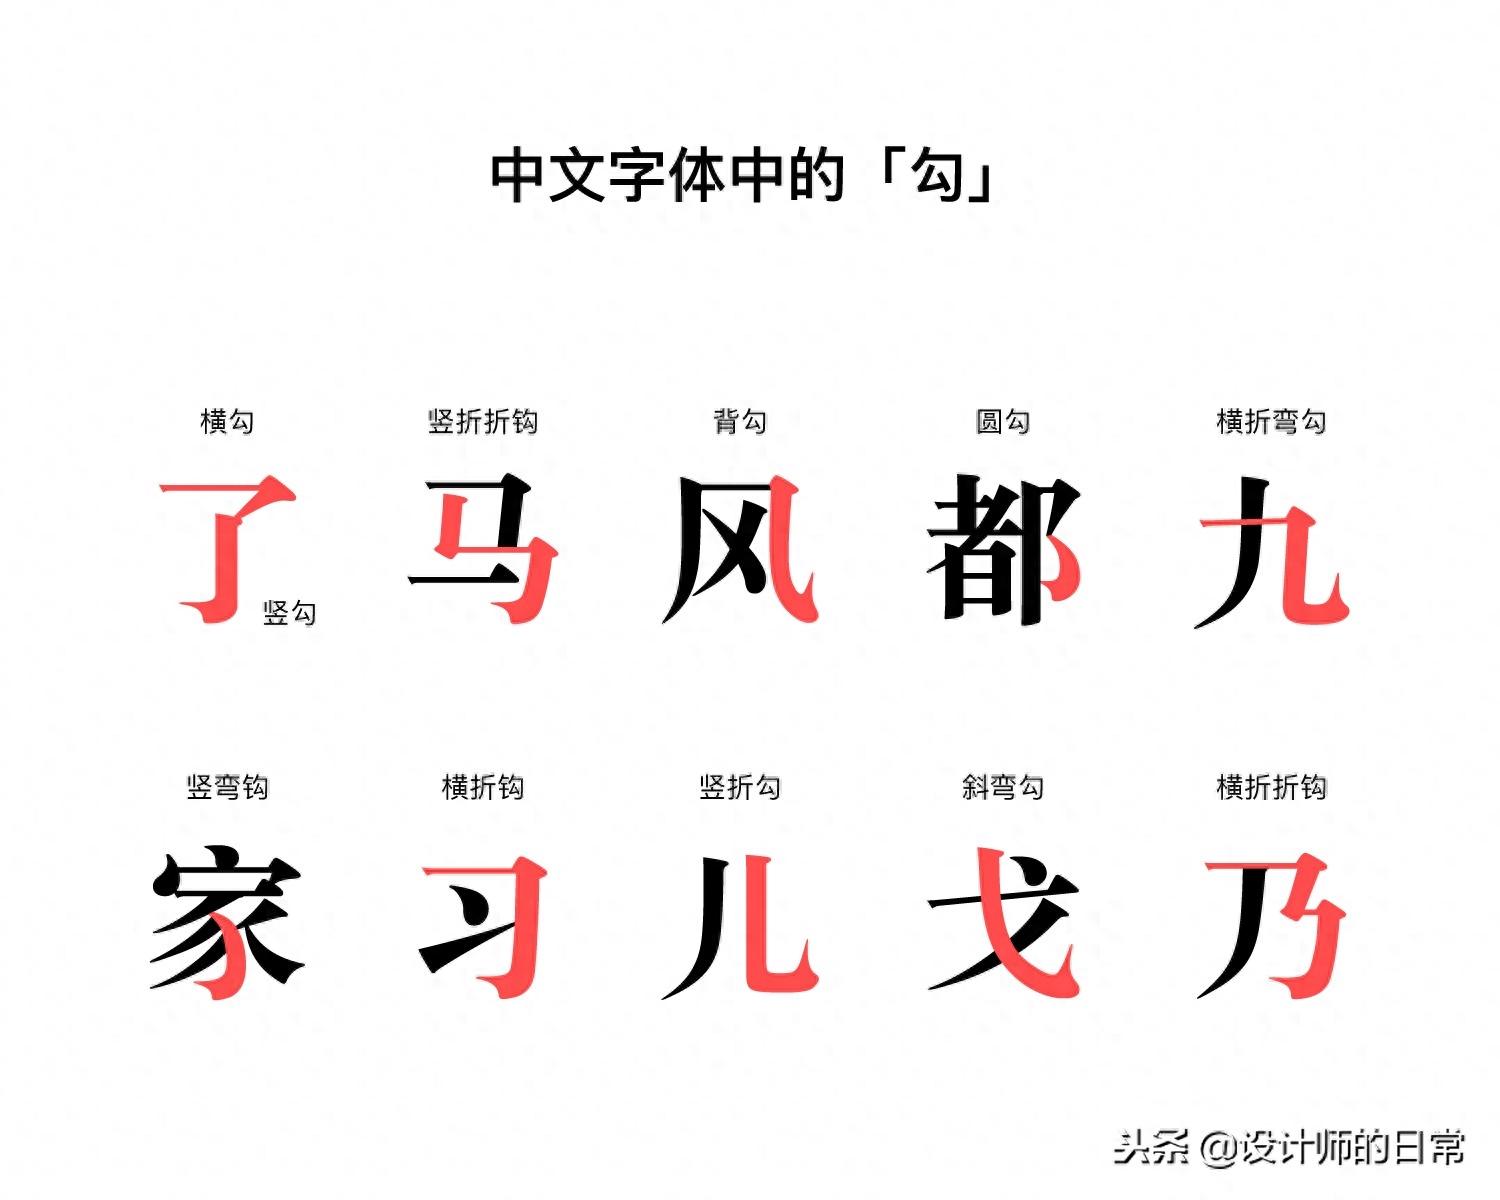 懂点设计系列-3 如何区分中文字体?